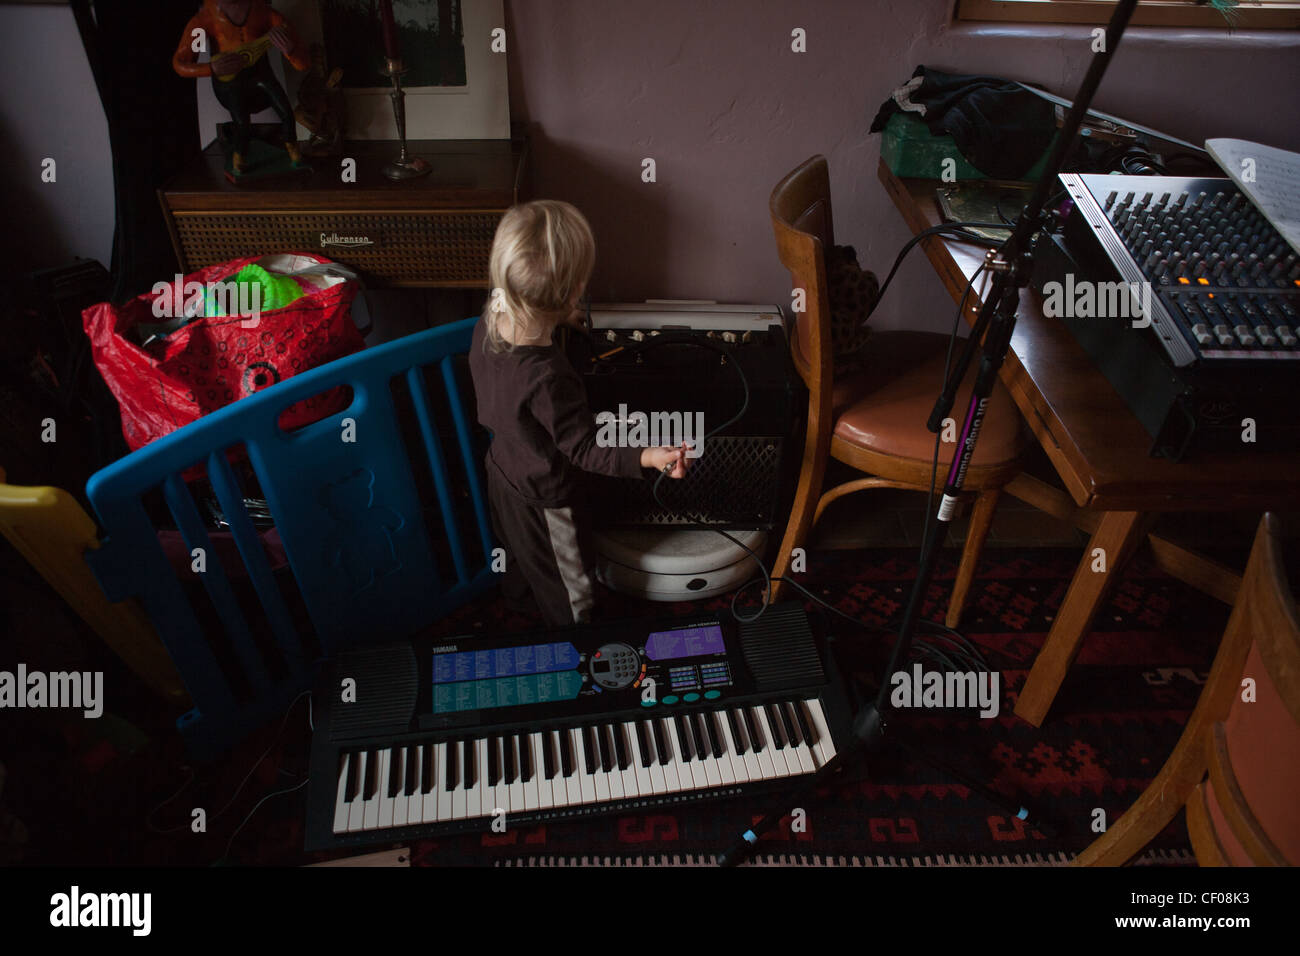 Einjähriges Kleinkind mit seiner Eltern Musik-Equipment zu Hause spielen, Elektronik, Kabel, Verstärker, Tastatur. Stockfoto